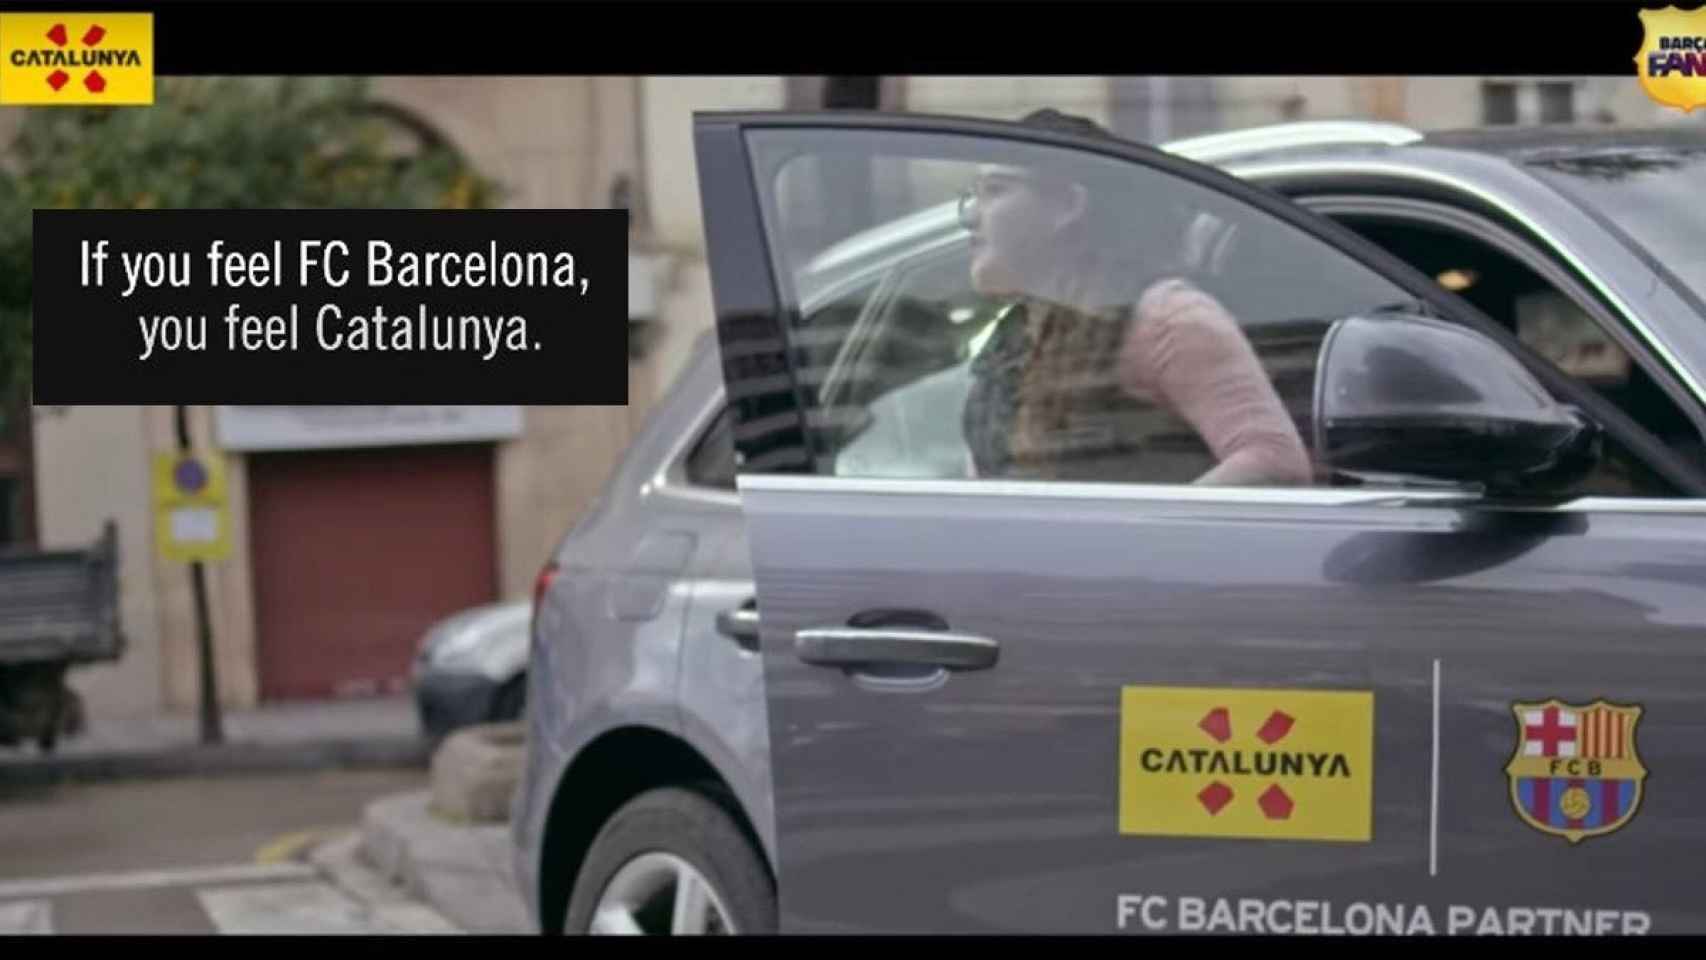 Captura del vídeo promocional de Cataluña en el que se lee: Si sientes el Barça, sientes Catalunya.